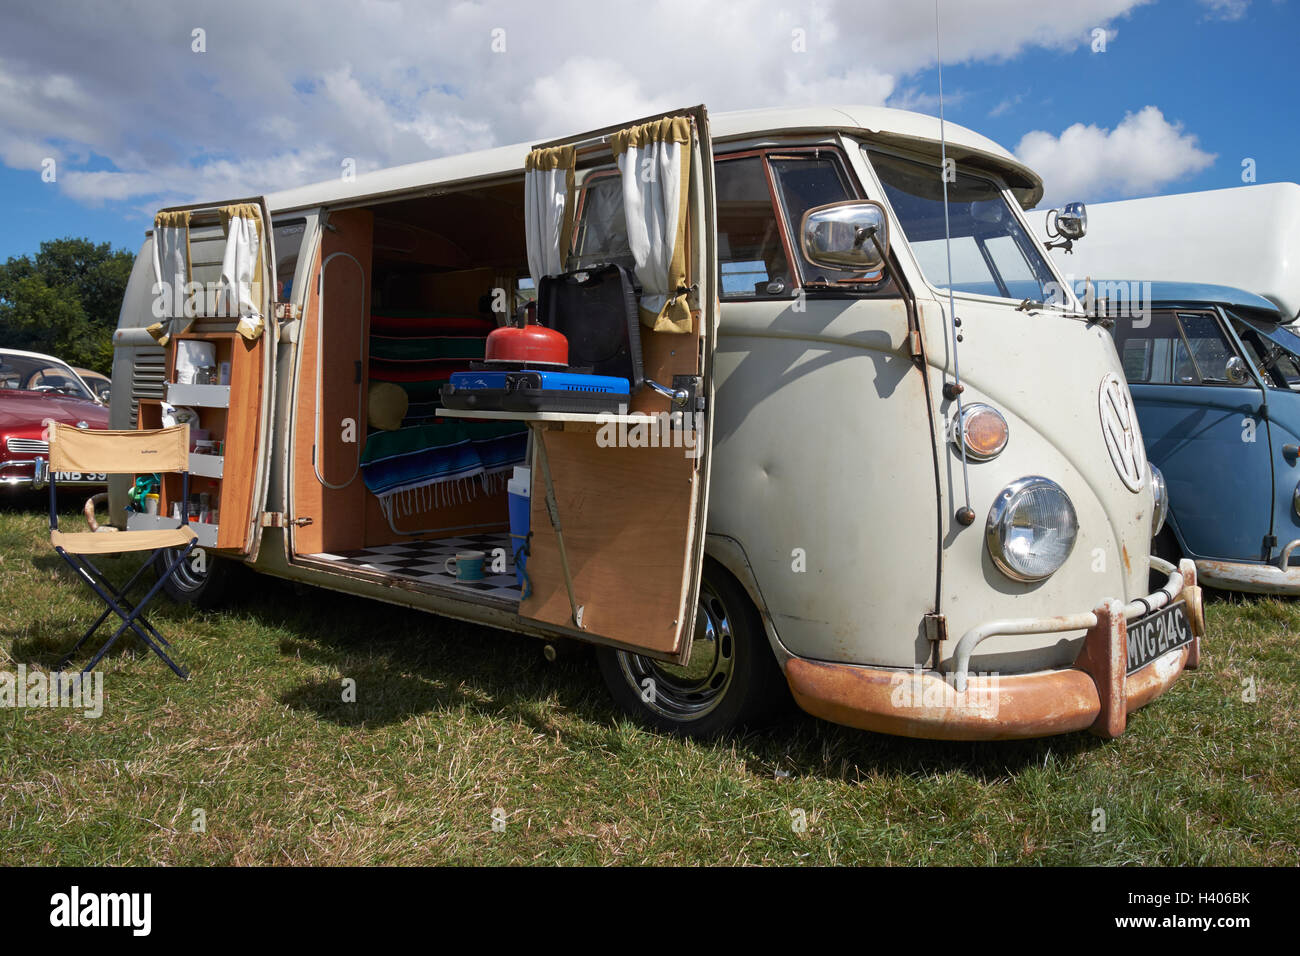 vw camper vans for sale in lincolnshire